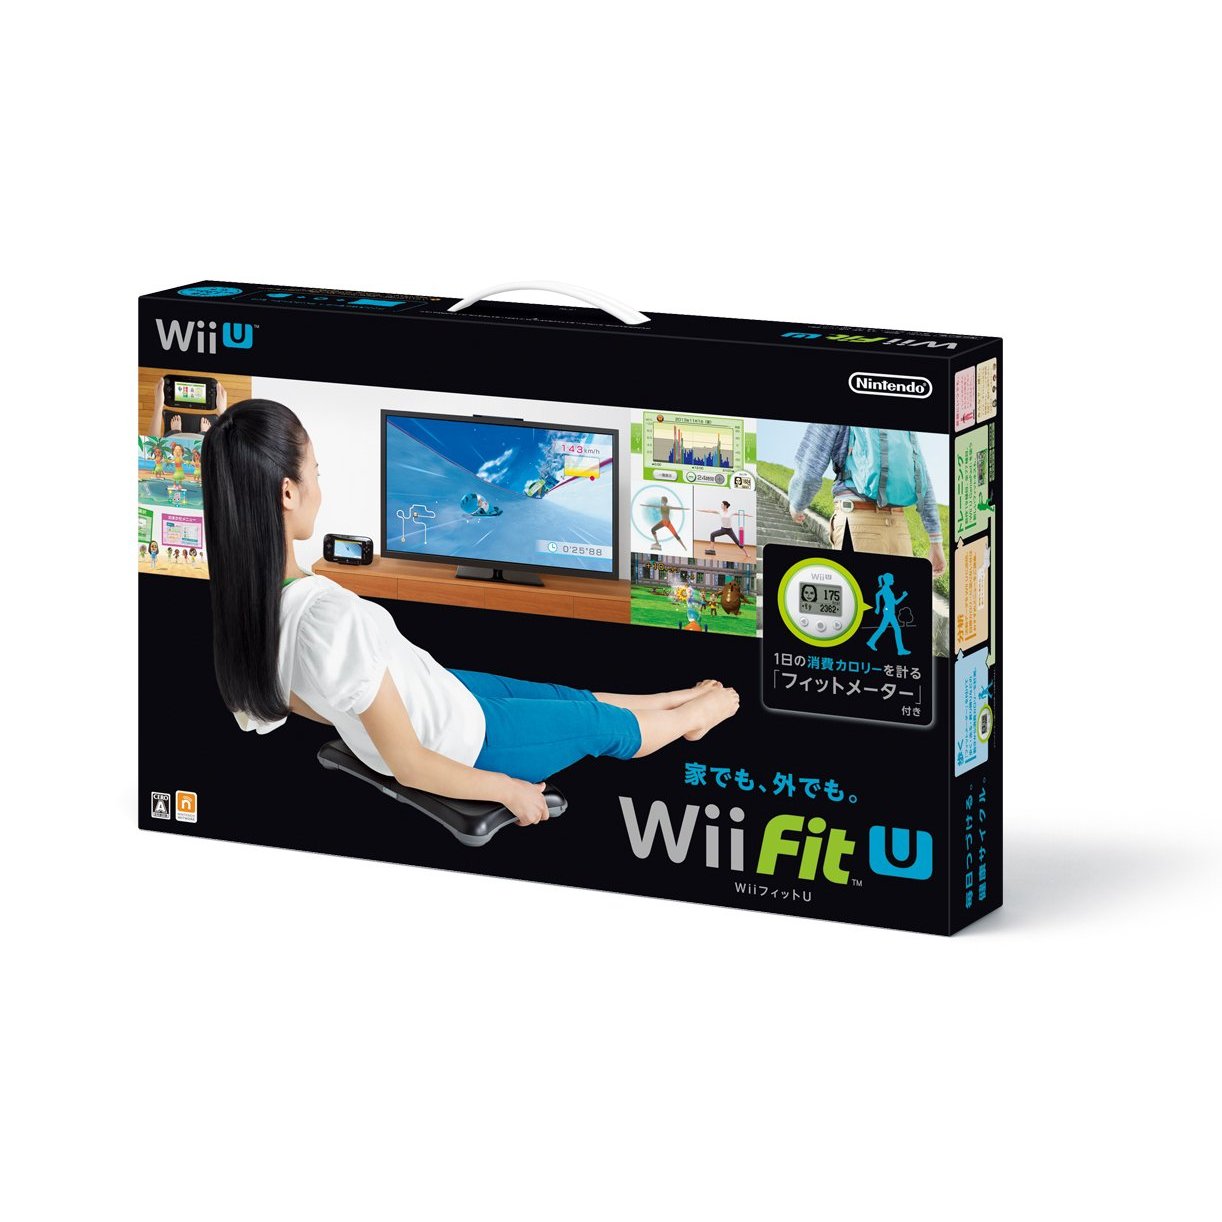 Wii fit. Wii Fit u. Wii Fit u Wii. Wii u Bundle Fit. Wii Balance Board.